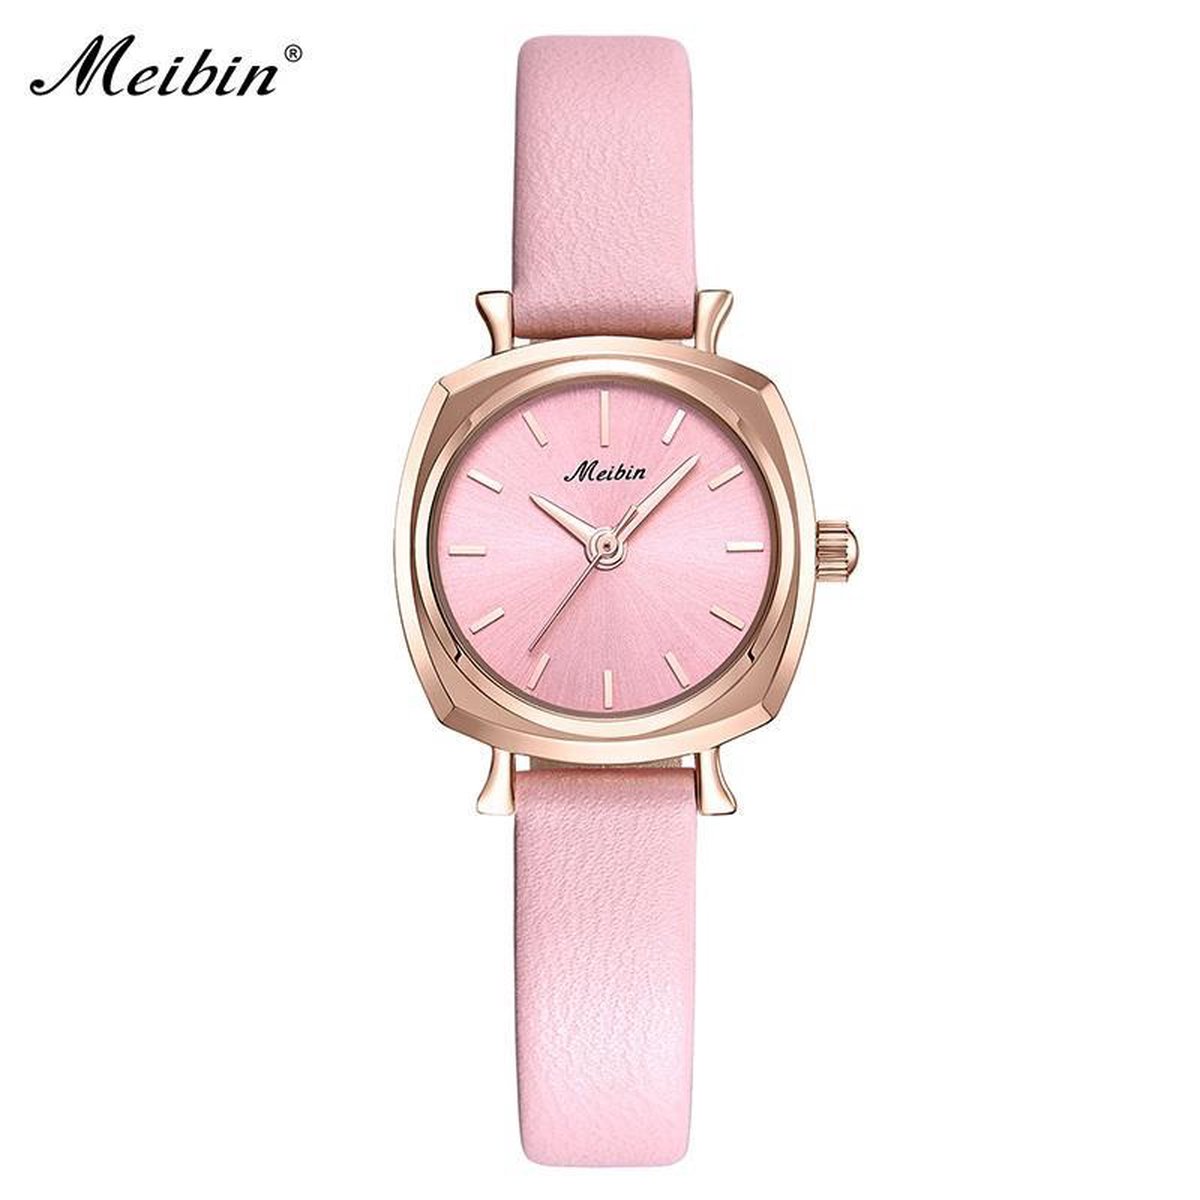 Longbo - Meibin - Dames Horloge - Roze/Rosé/Roze - 24mm (Productvideo)